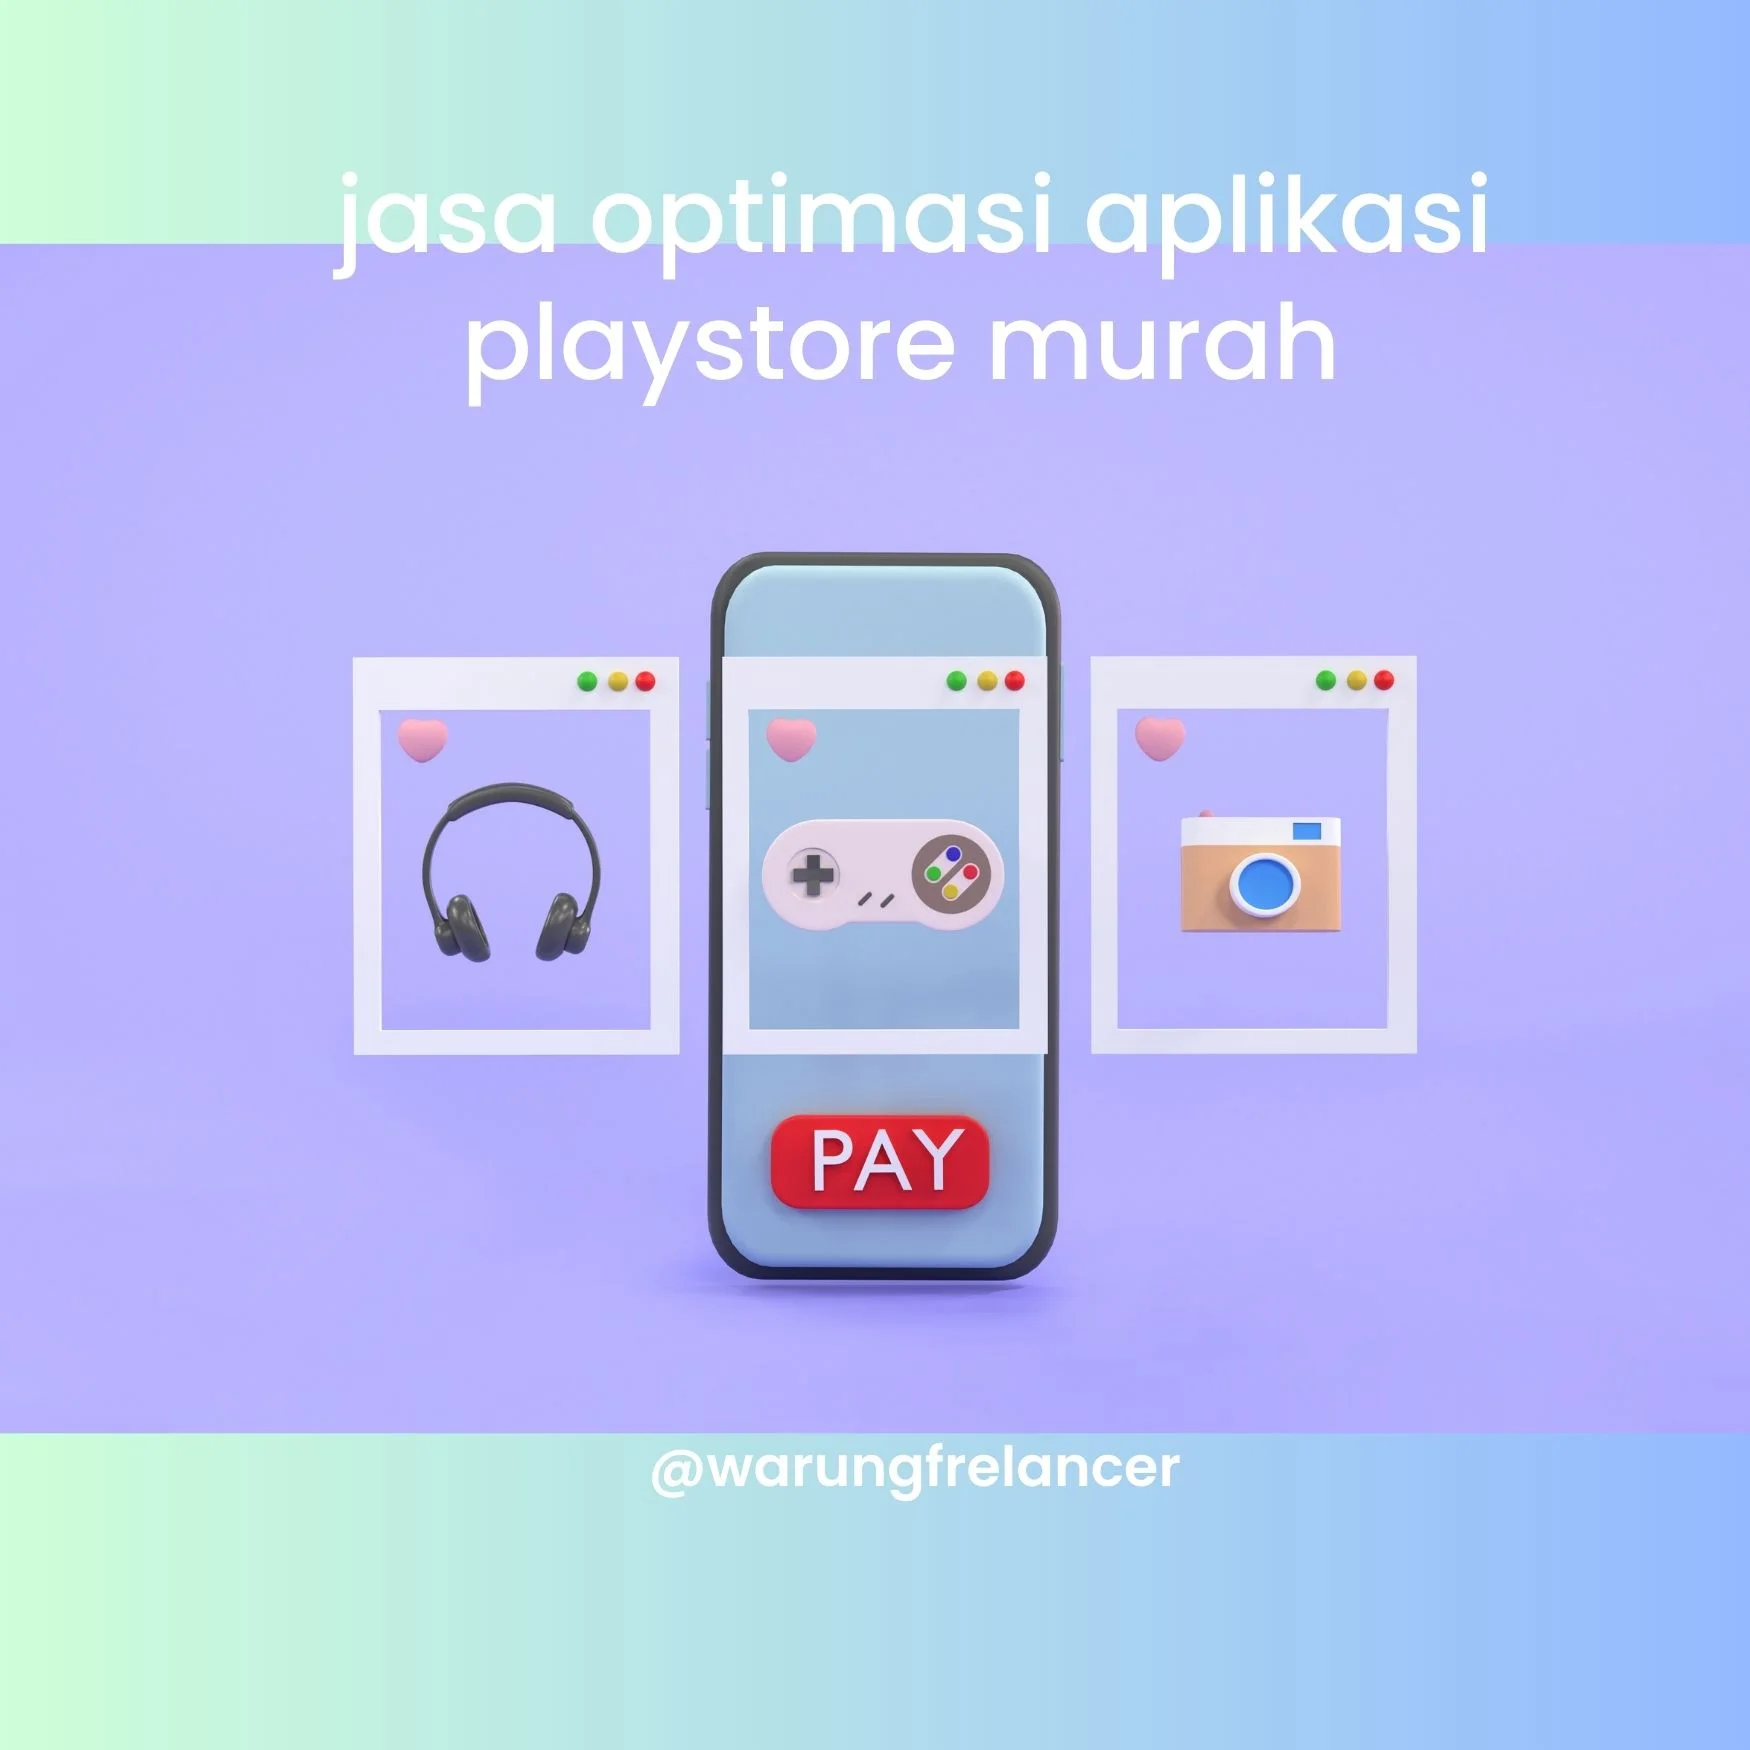 Pengertian Jasa Optimasi Aplikasi di Play Store Murah